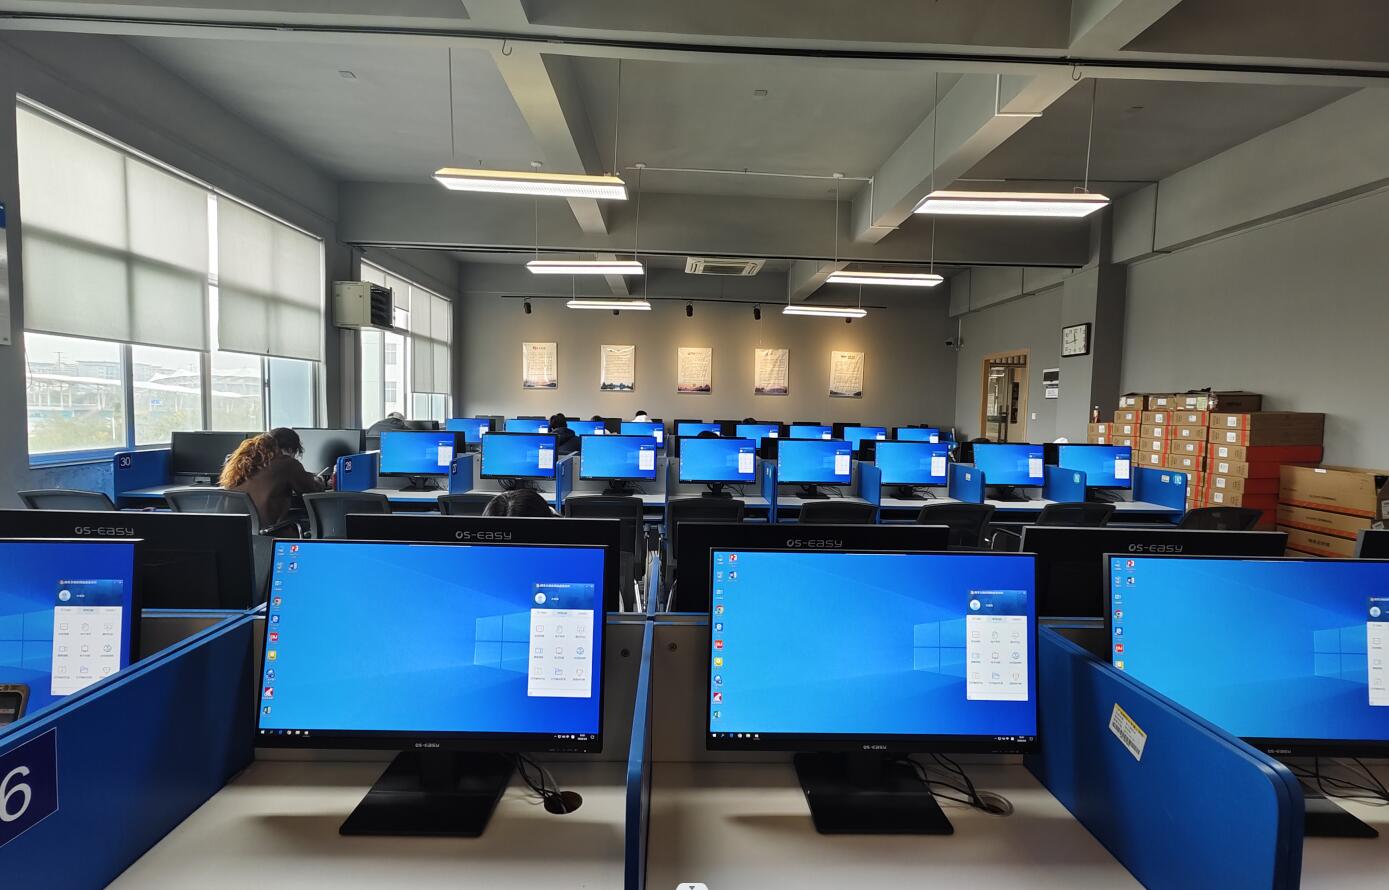 学校图书馆电子阅览室升级改造顺利完成